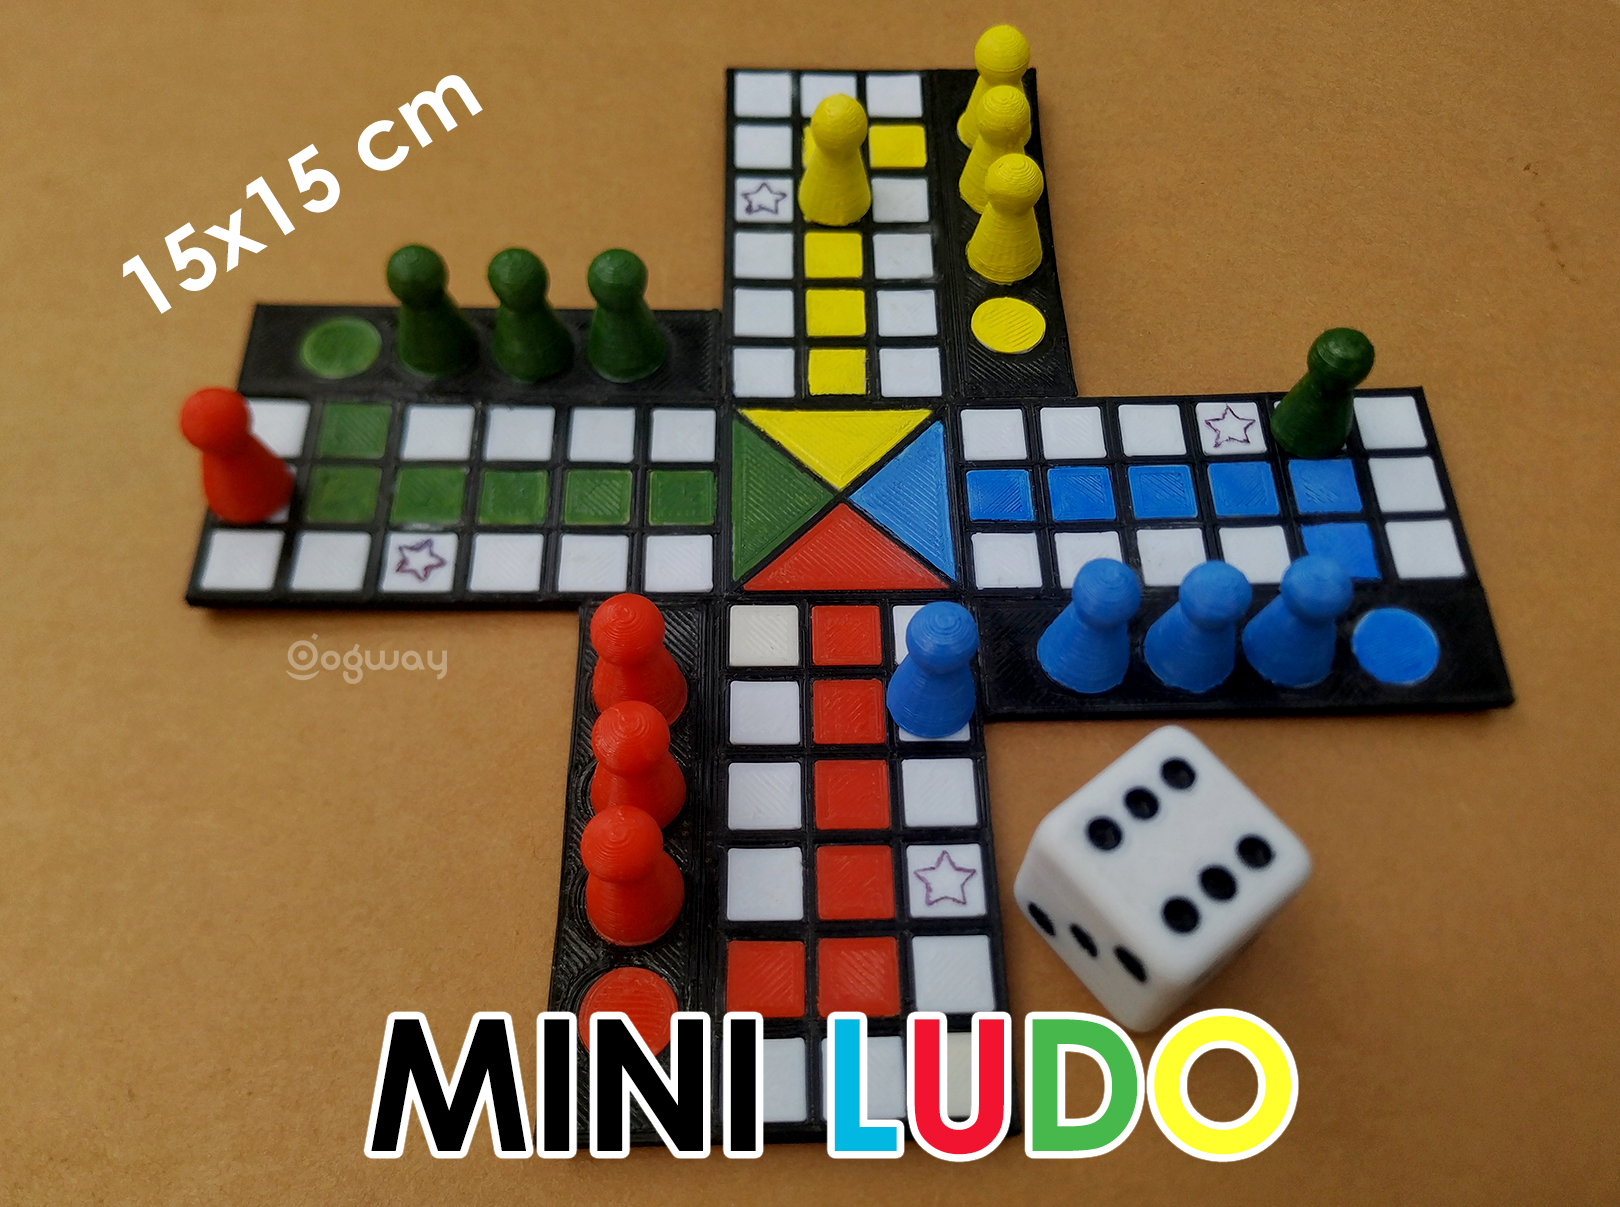 Ludo Club - Free Dice Board Games 